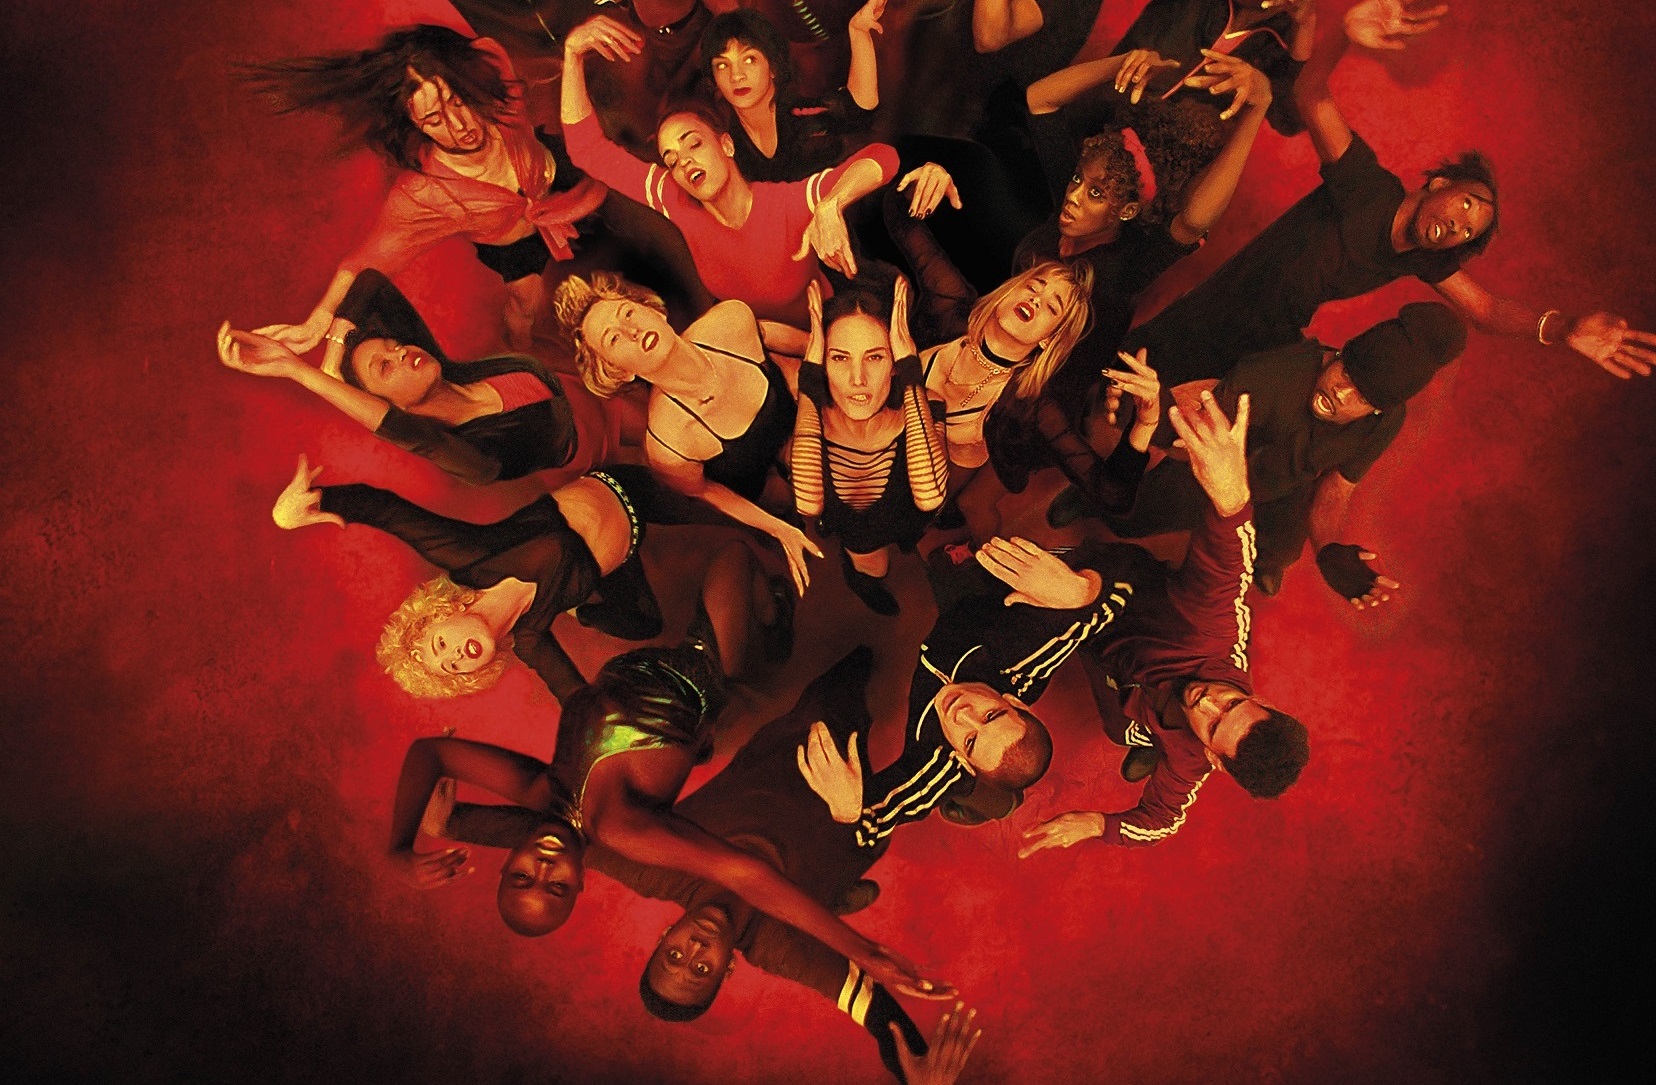 Zdjęcie; widok z góry na grupę ludzi w czarnych strojach wygiętych w tańcu